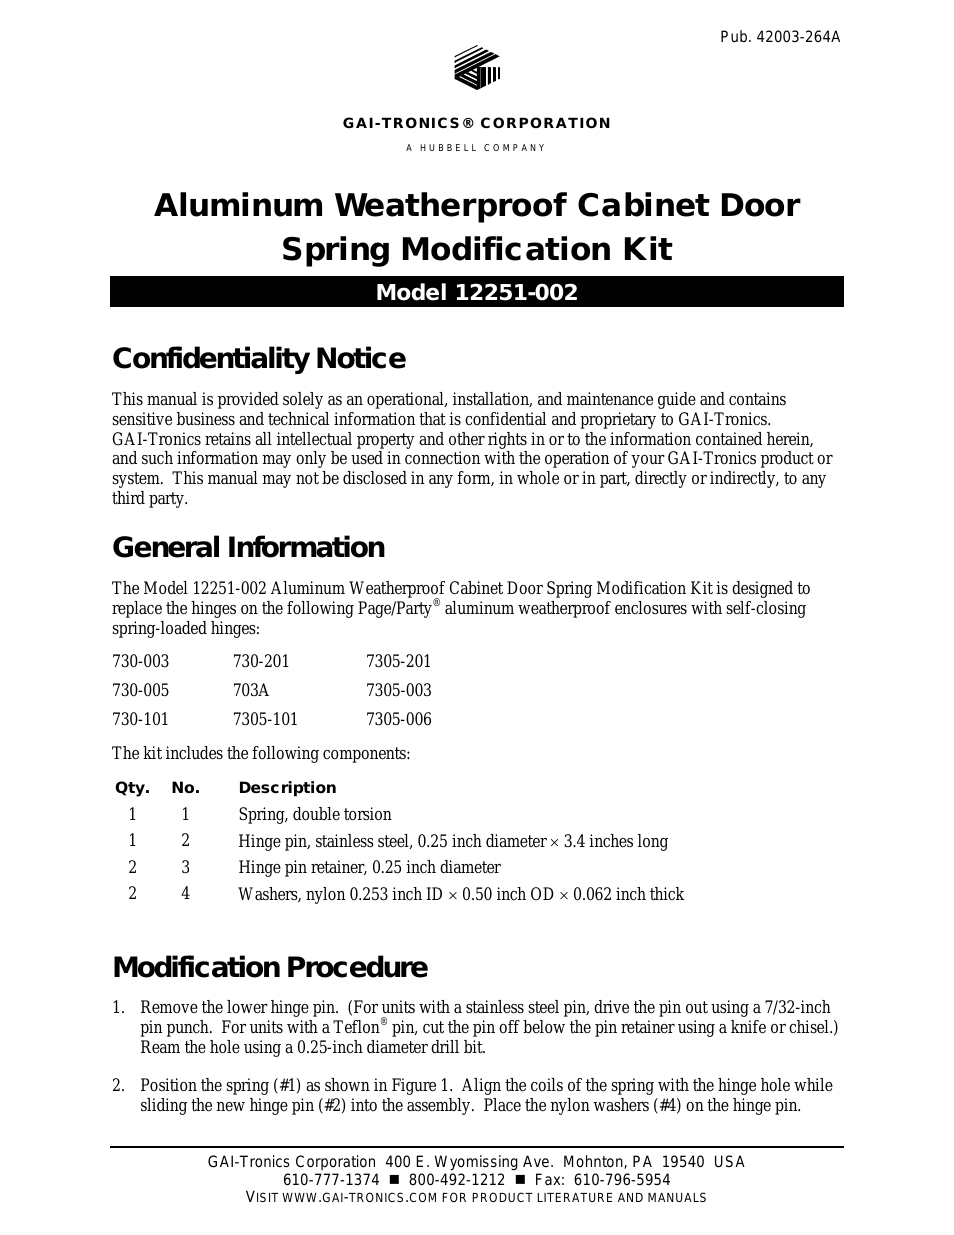 12251-002 Aluminum Weatherproof Cabinet Door Spring Modification Kit